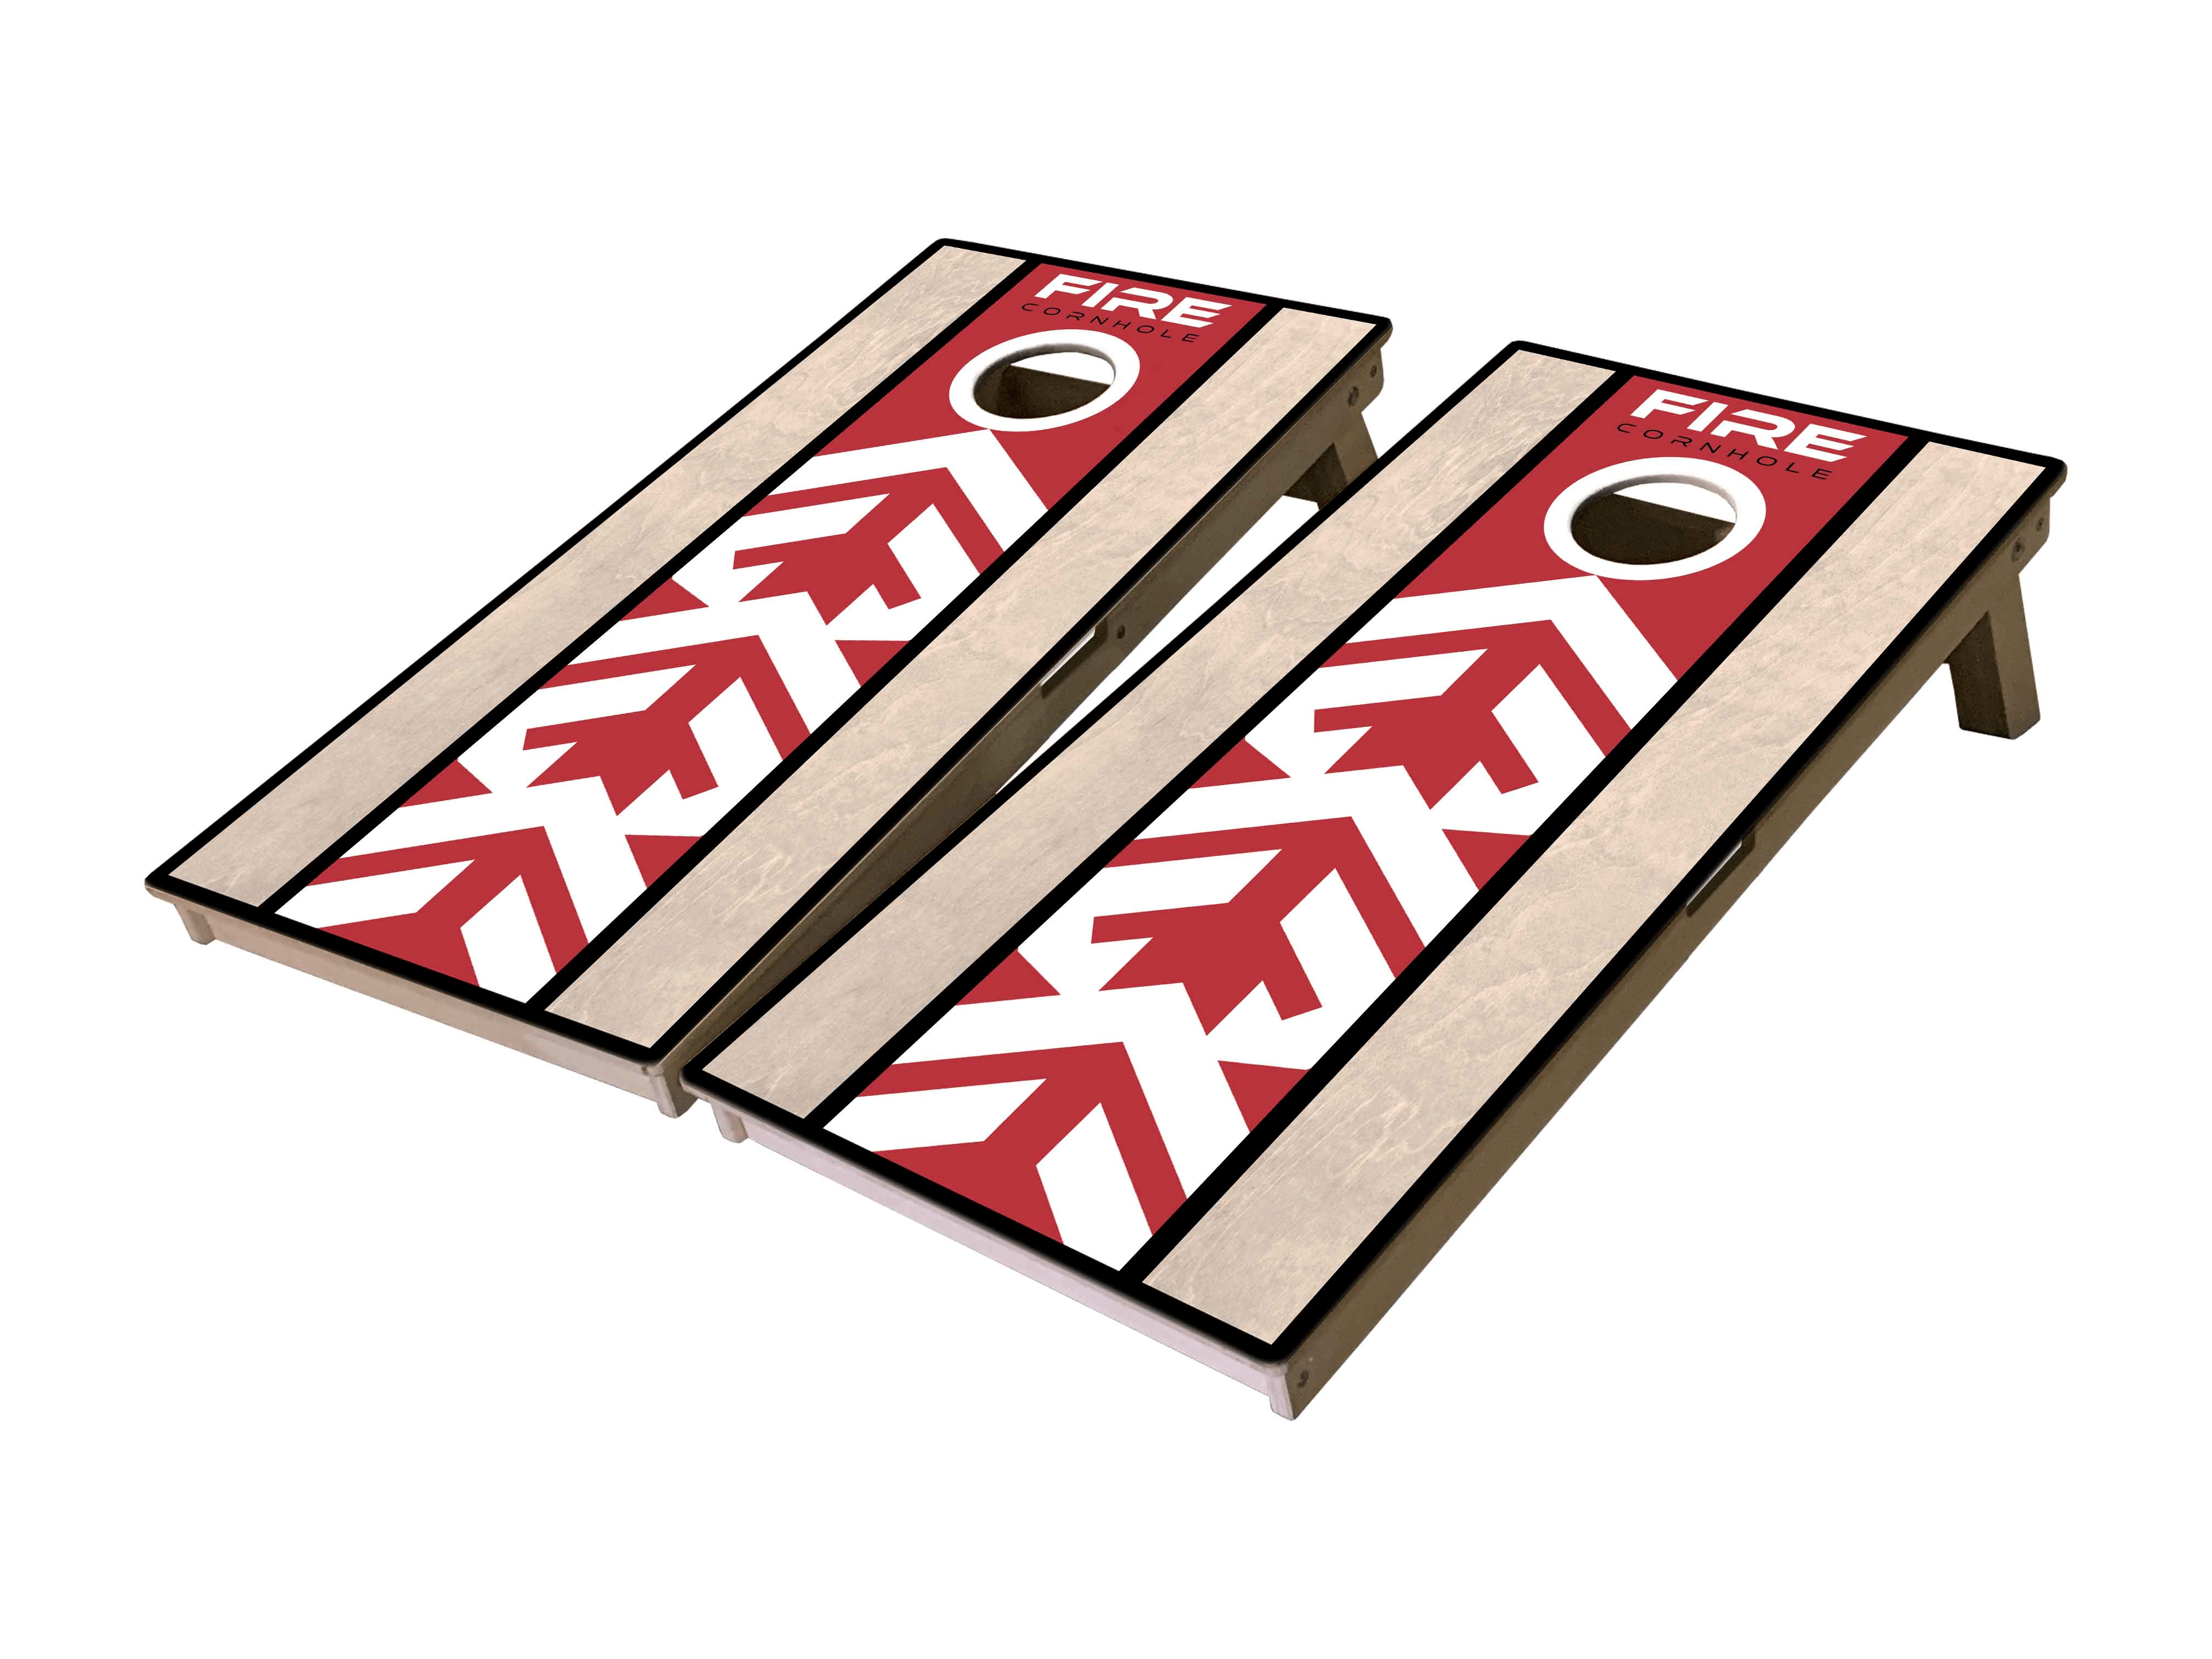 Fire Cornhole Mini Cornhole Boards with red and white design